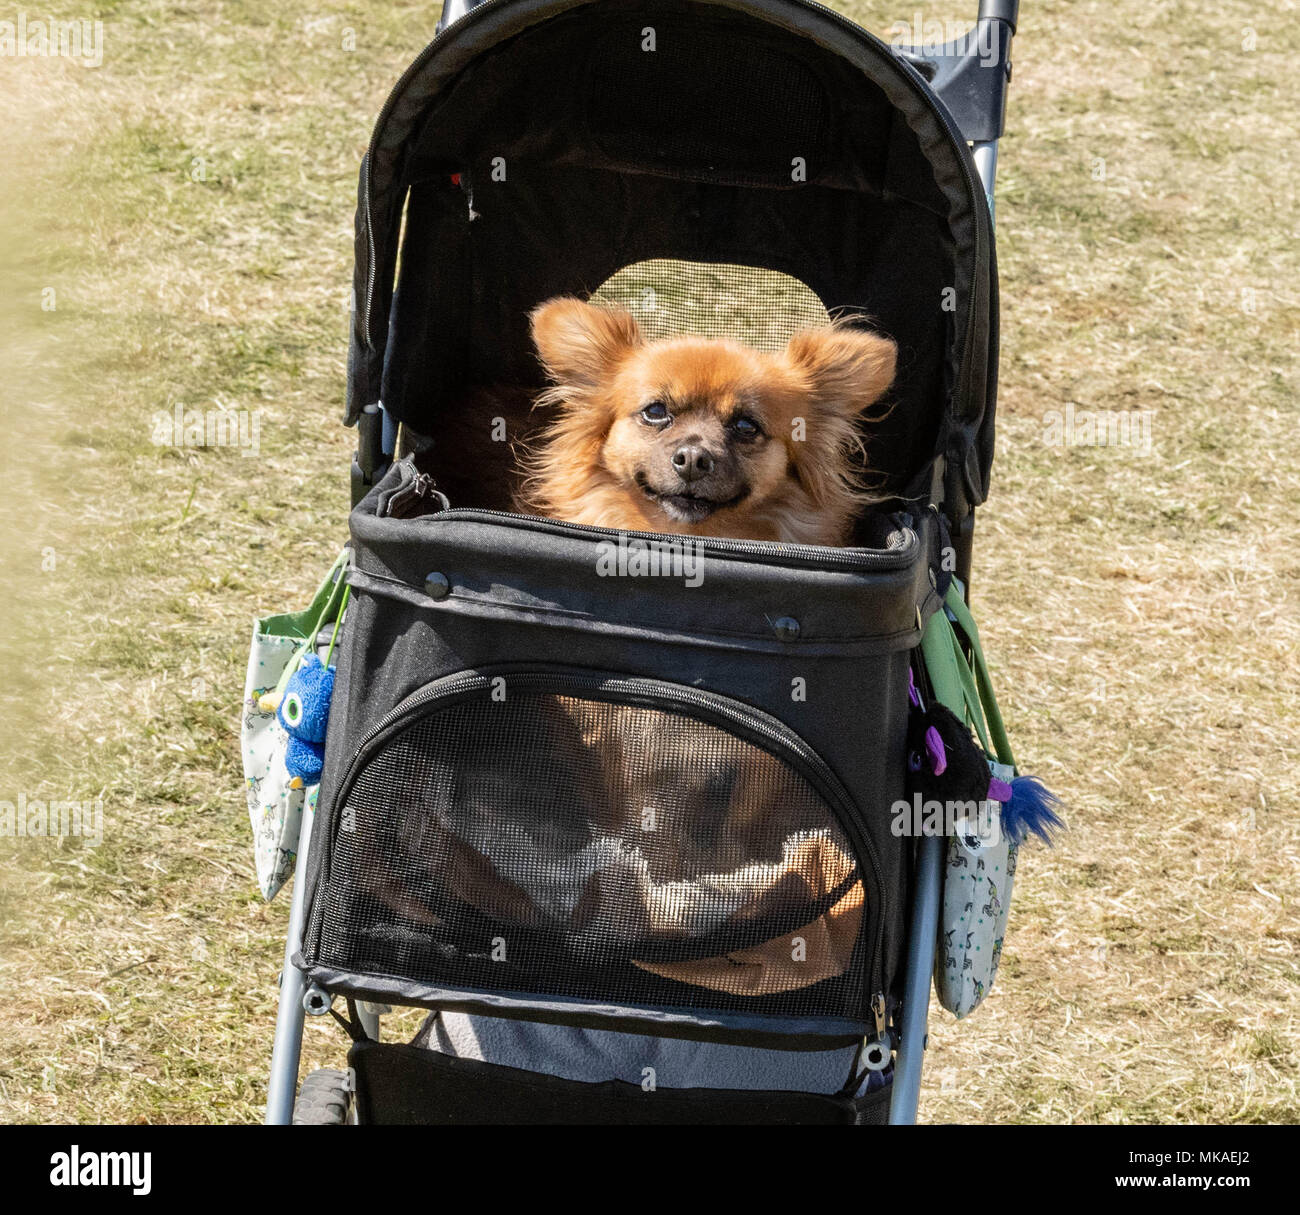 Brentwood, Essex, 7. Mai 2018, ein Hund in einem Buggy Am Alles über Hunde zeigen, Brentwood Essex, Kredit Ian Davidson/Alamy leben Nachrichten Stockfoto